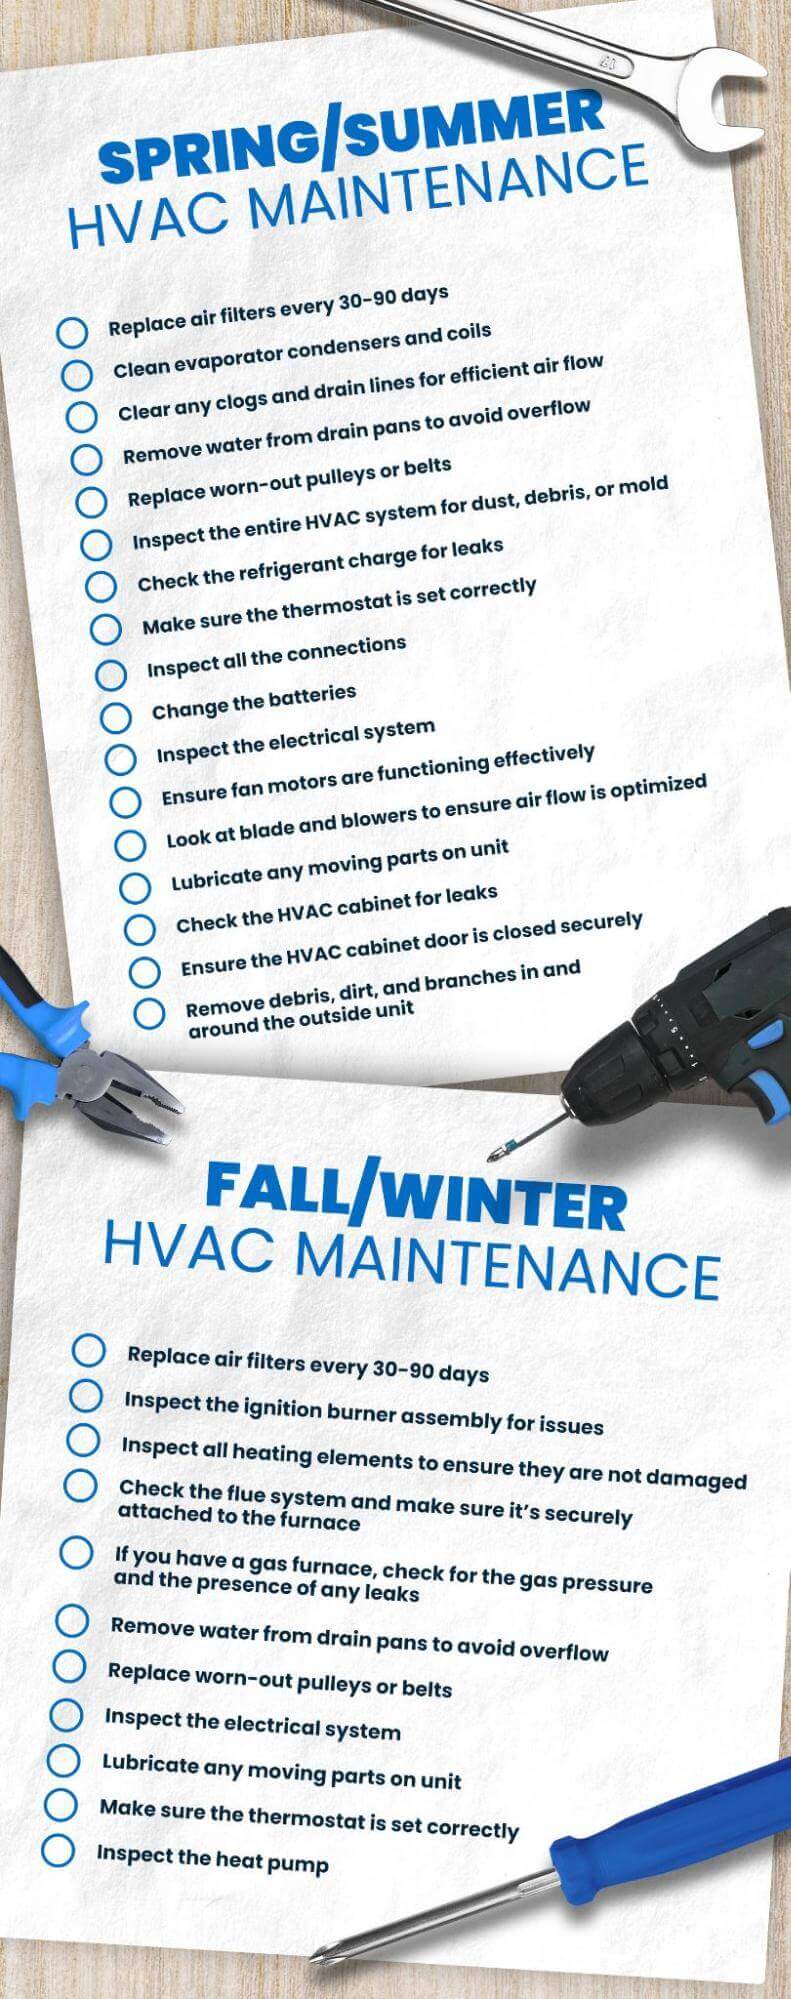 HVAC maintenance checklist